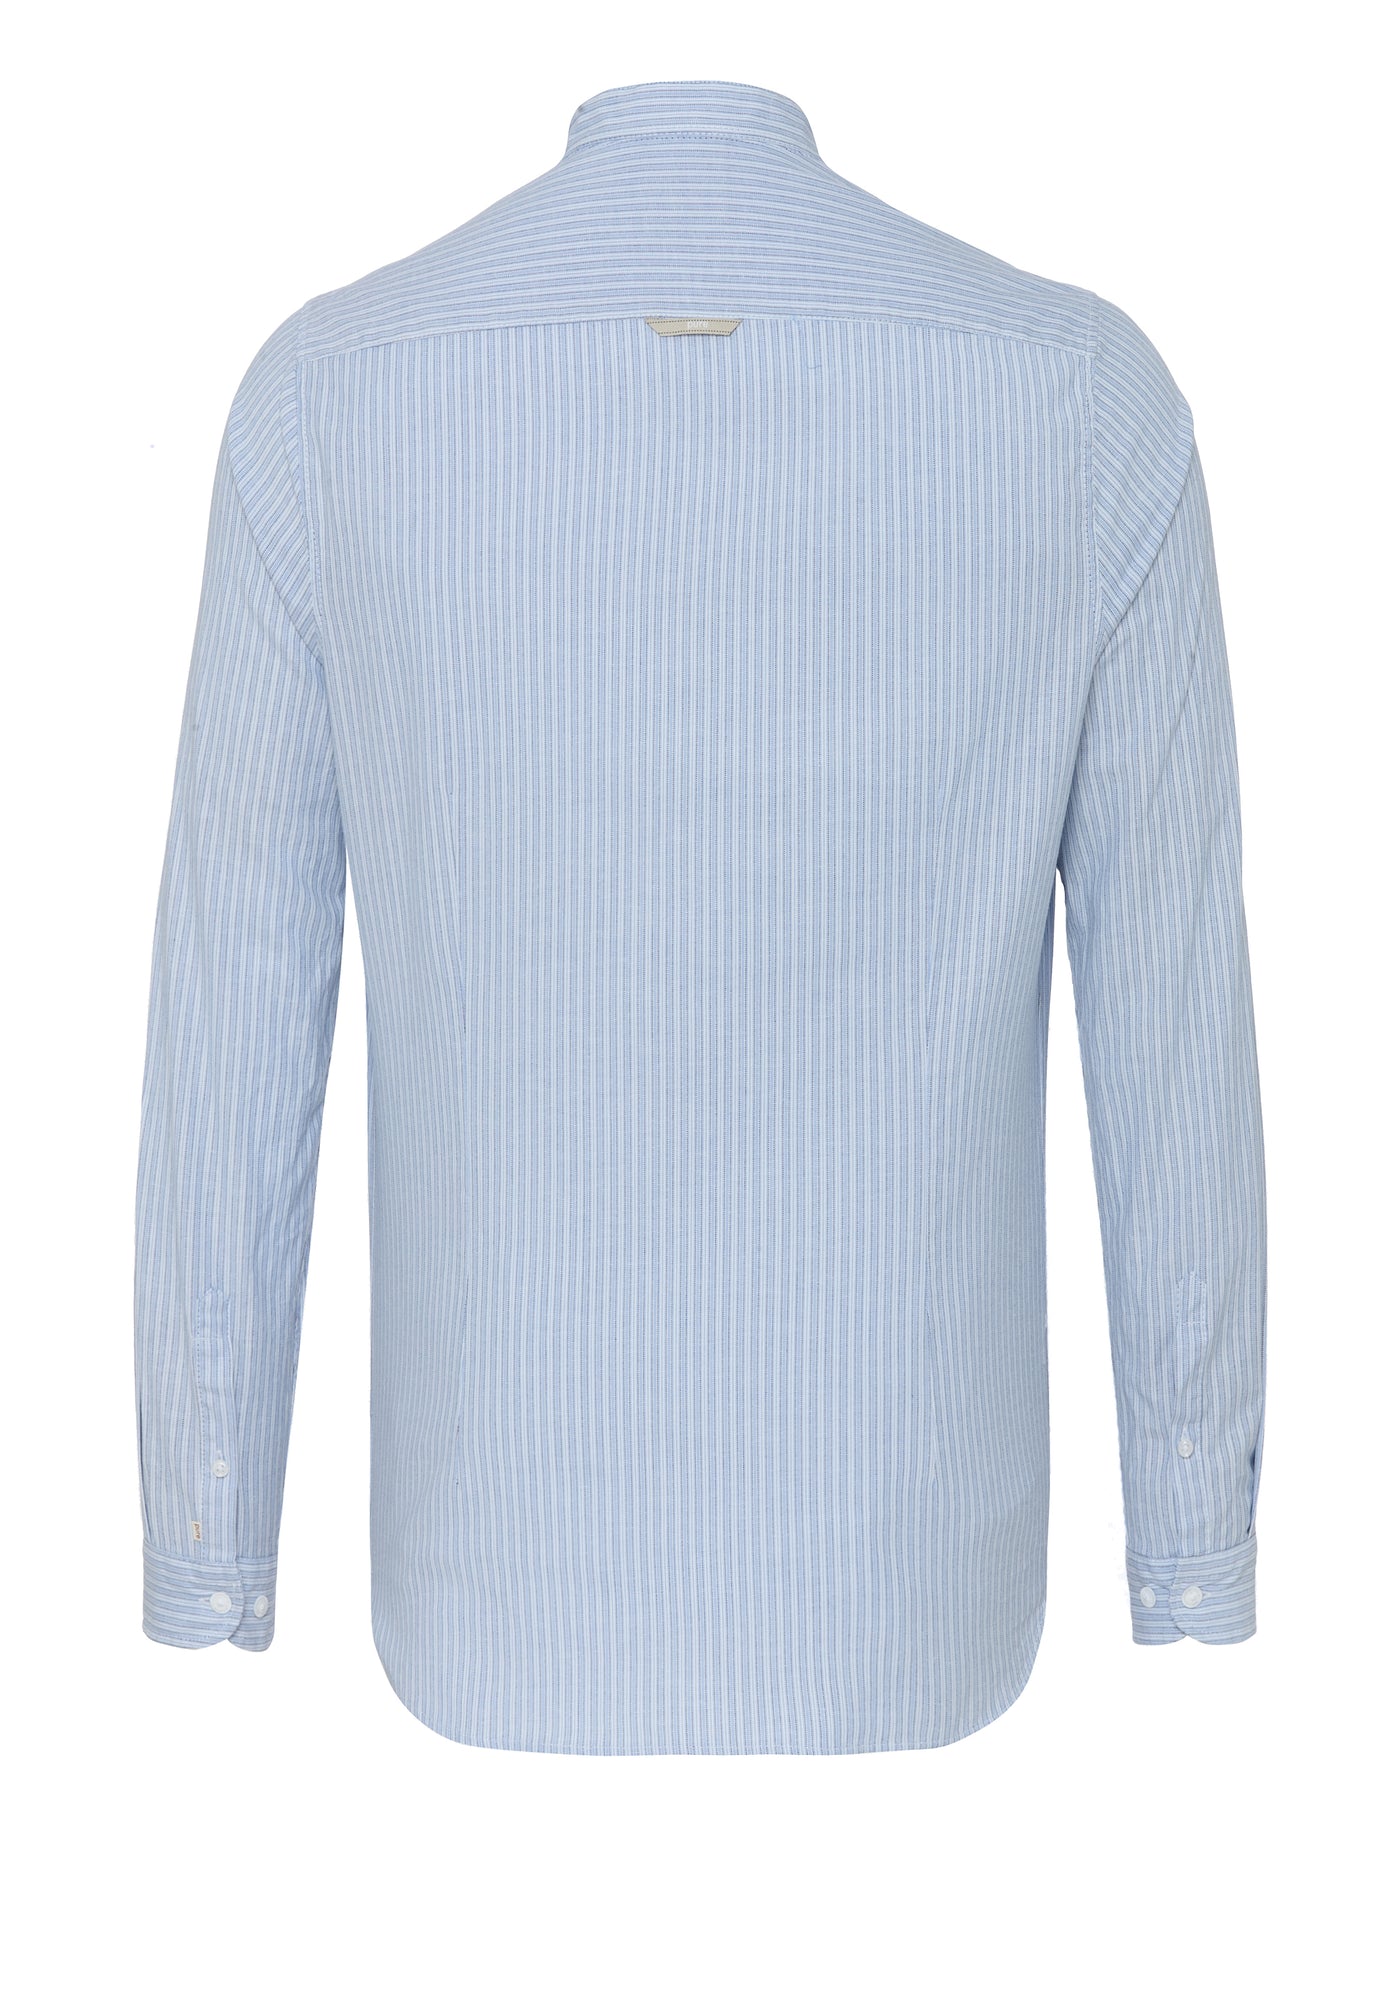 5015-21688 - Tracht Hemd slim fit -  Streifen blau